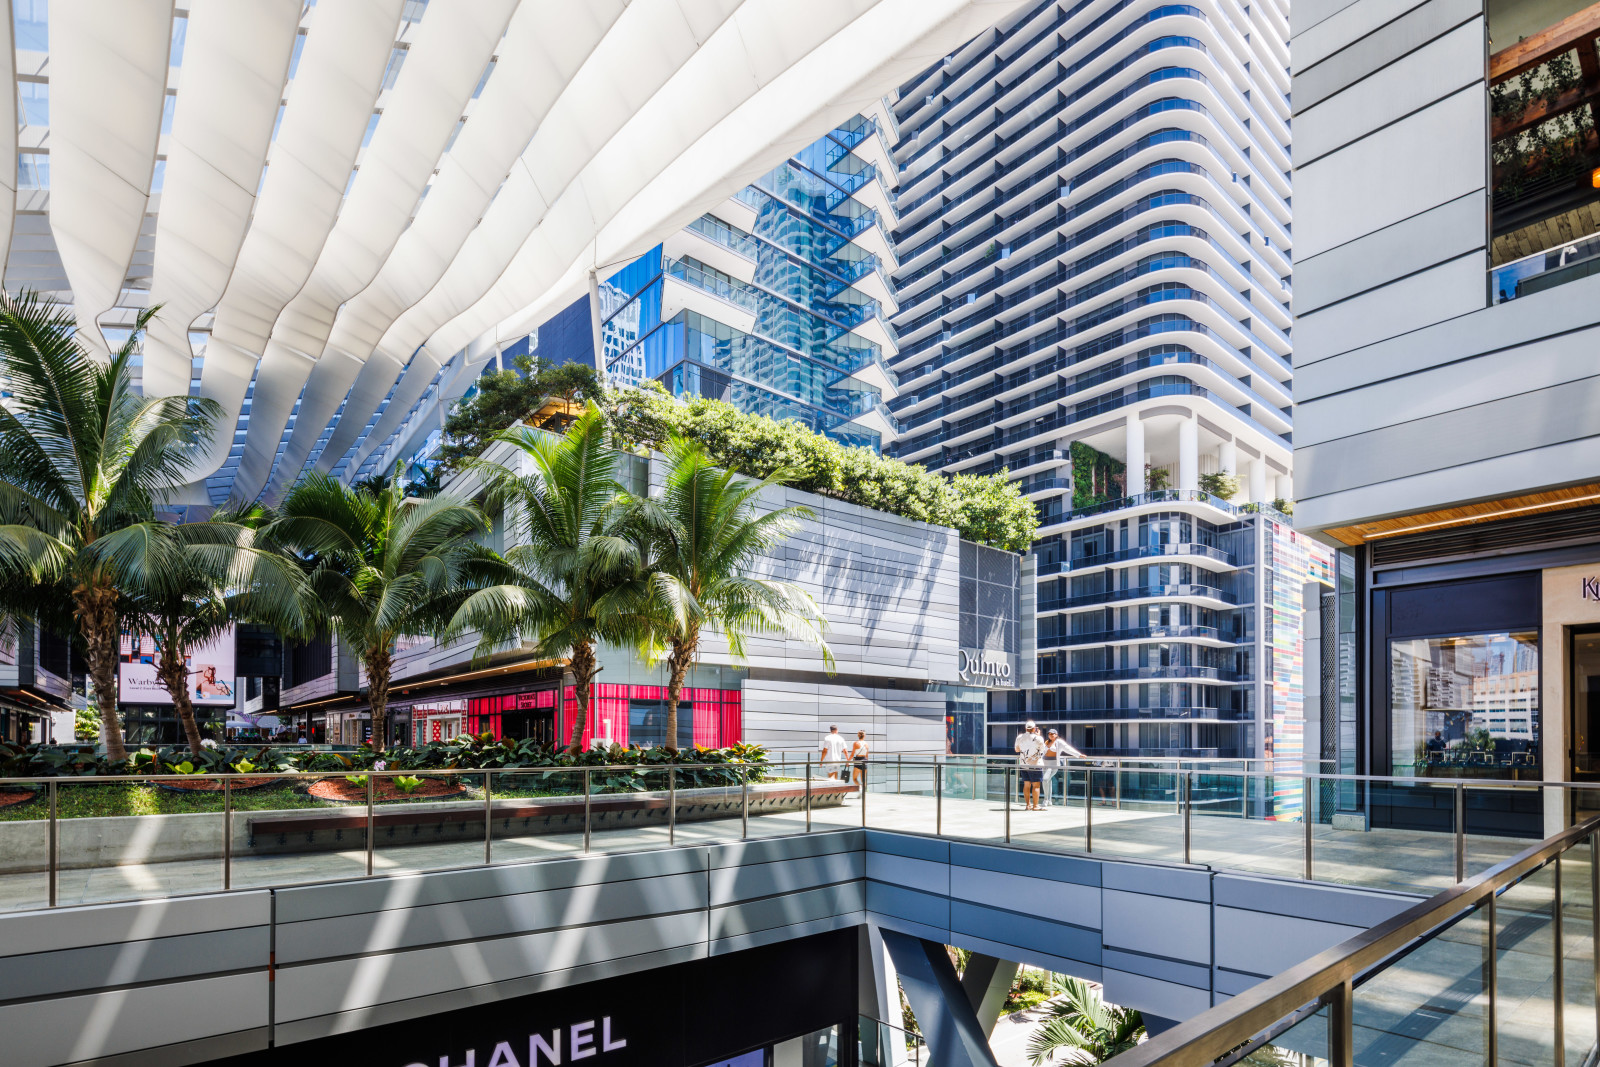 Photo of Brickell City Centre Upscale Shopping Mall Miami FL